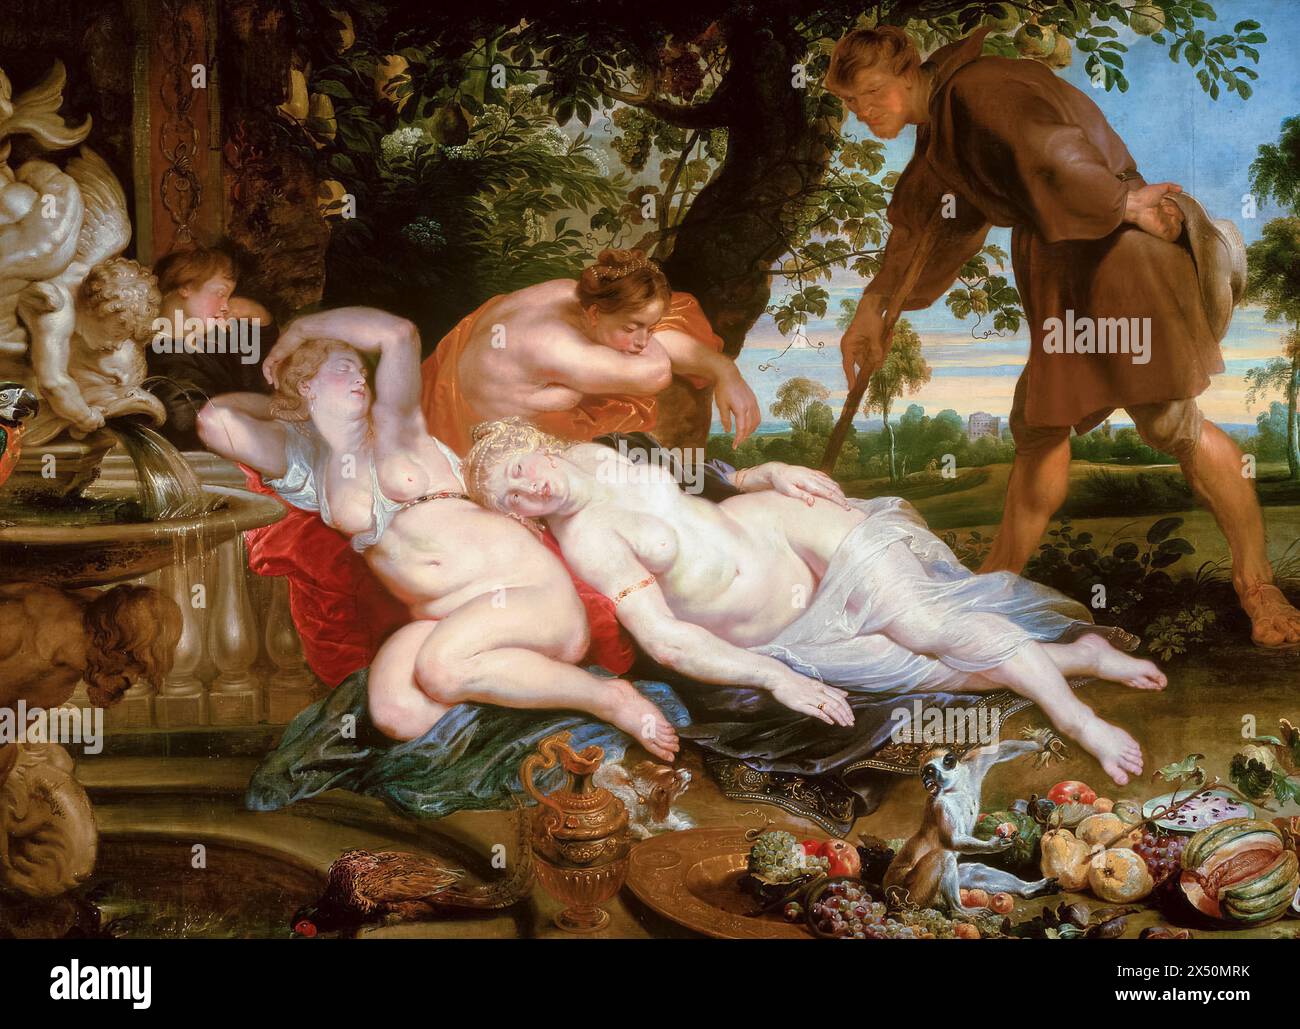 Cimon et Iphigénie, peinture à l'huile sur toile de Peter Paul Rubens, Frans Snyders (nature morte avec singes) et Jan Wildens (paysage), vers 1617 Banque D'Images